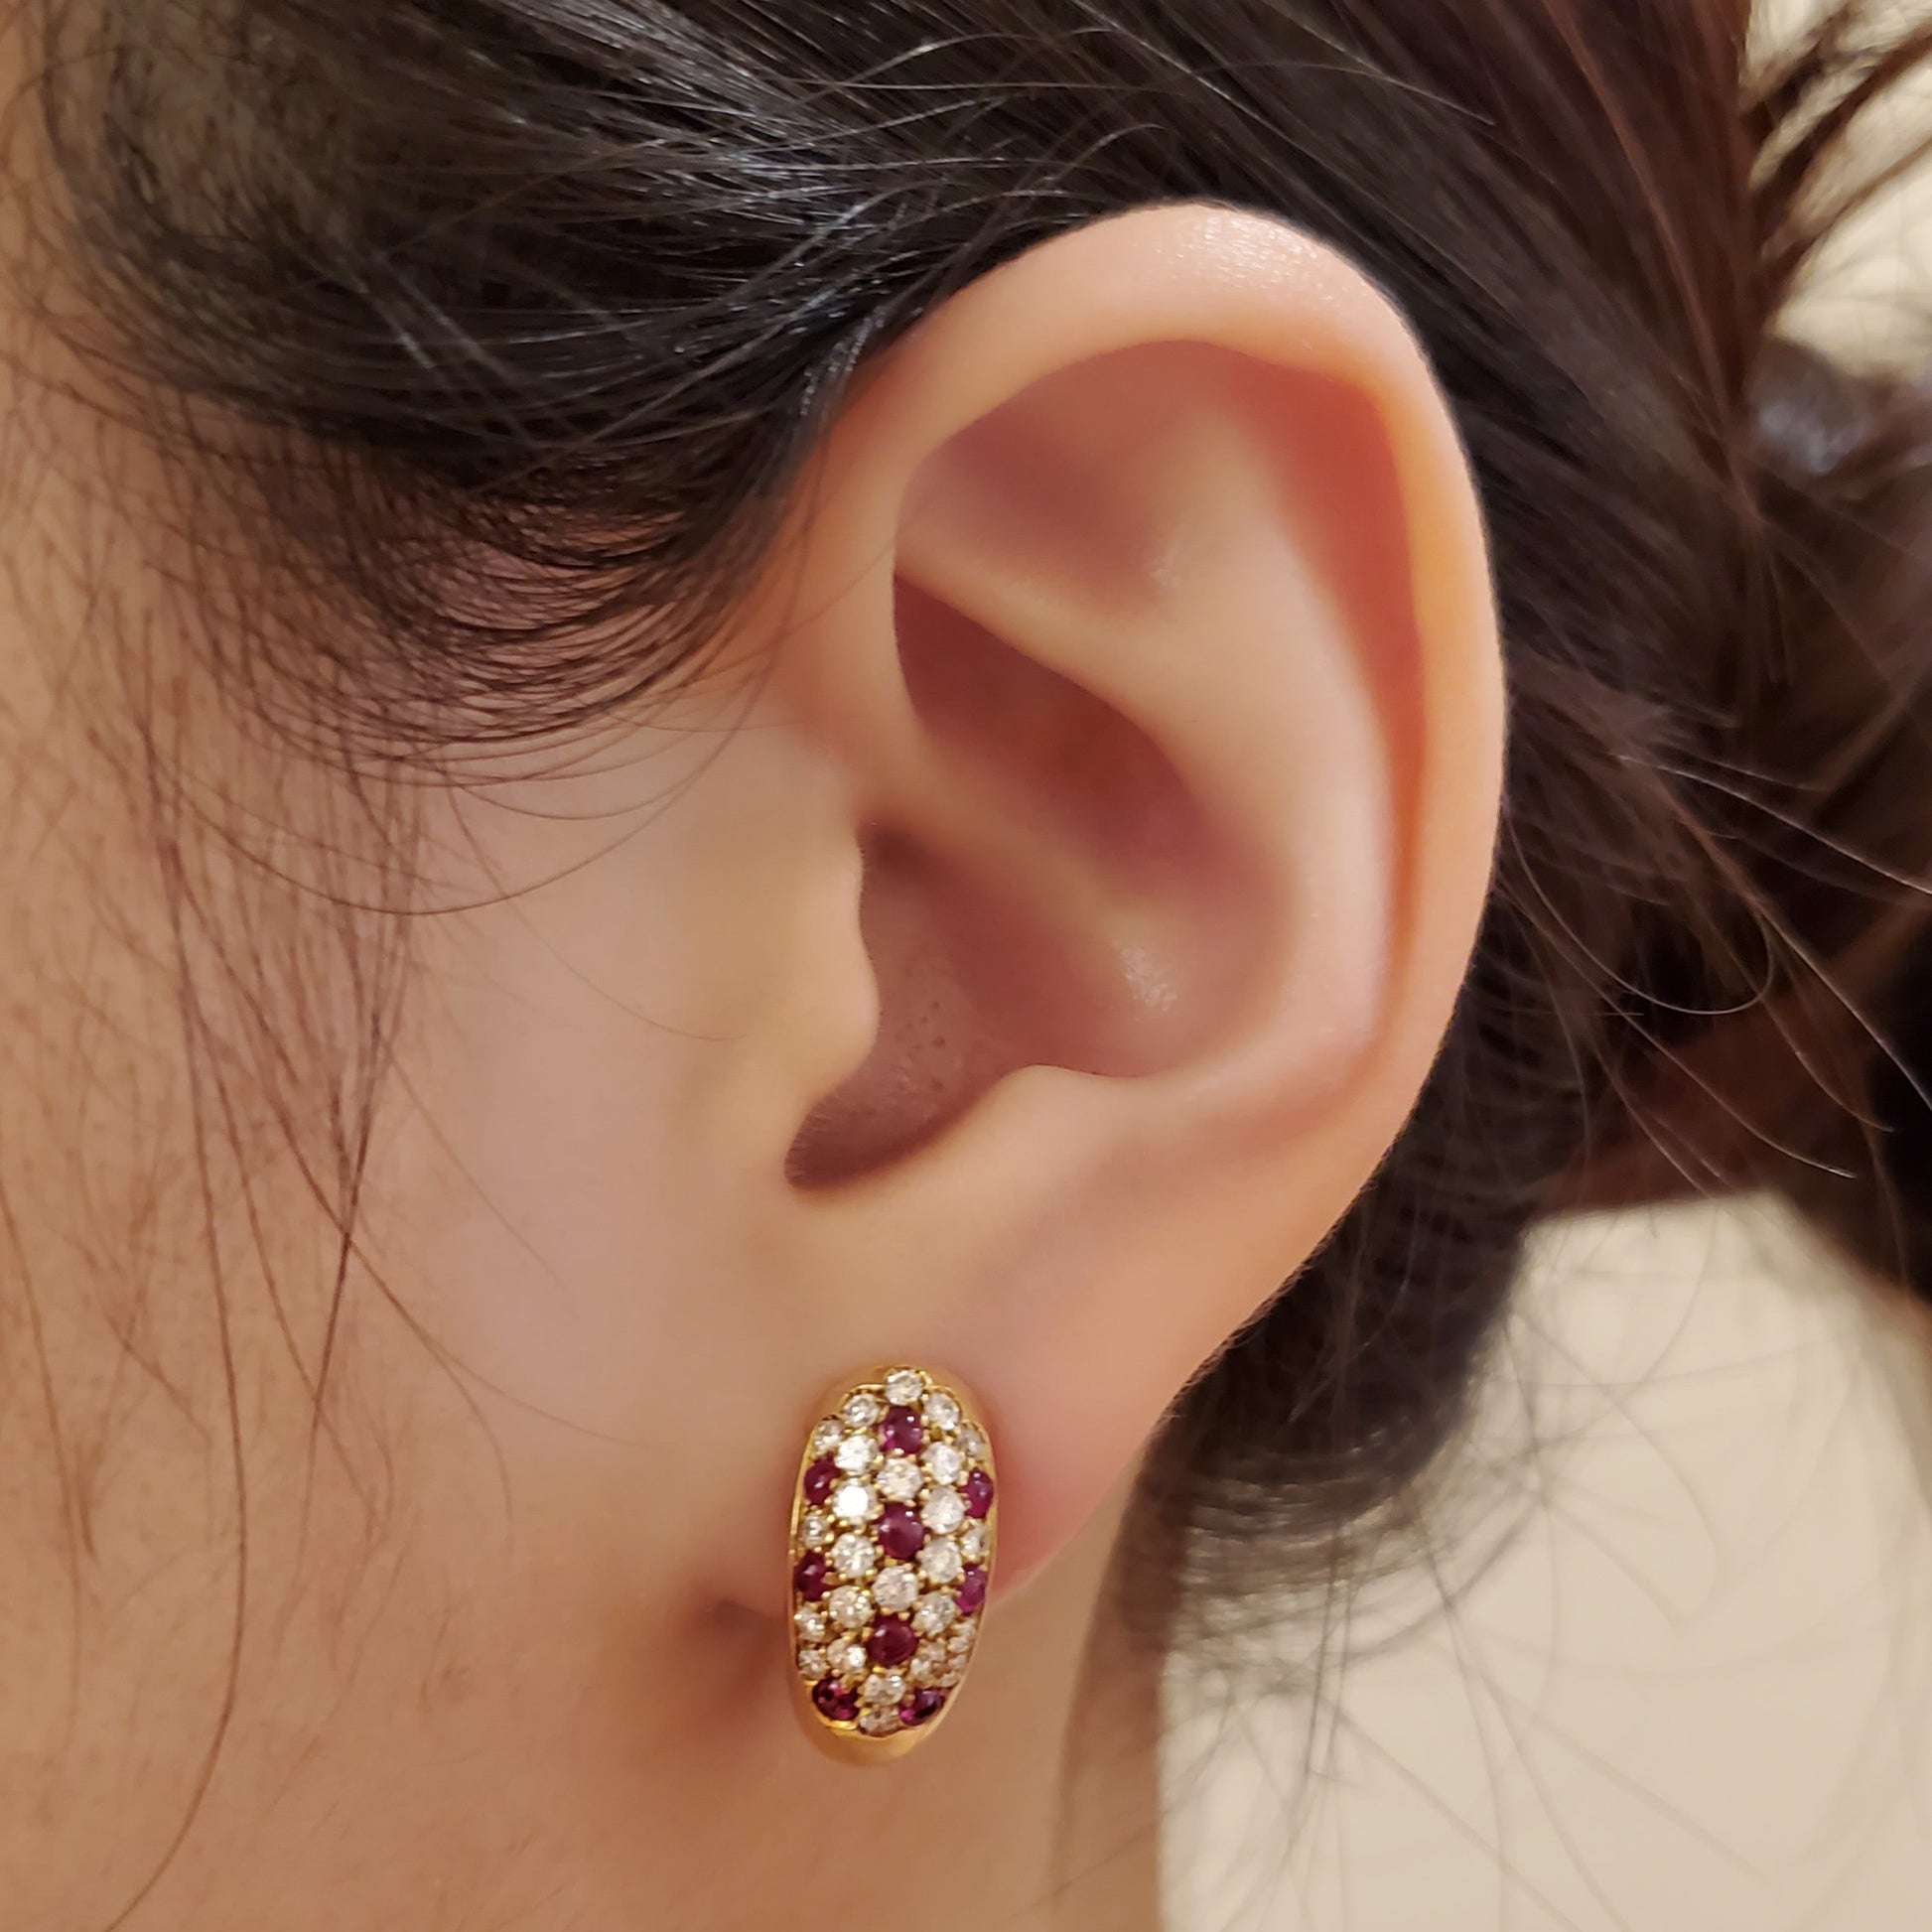 Cartier 1980s 18KT Yellow Gold Ruby & Diamond Earrings on ear